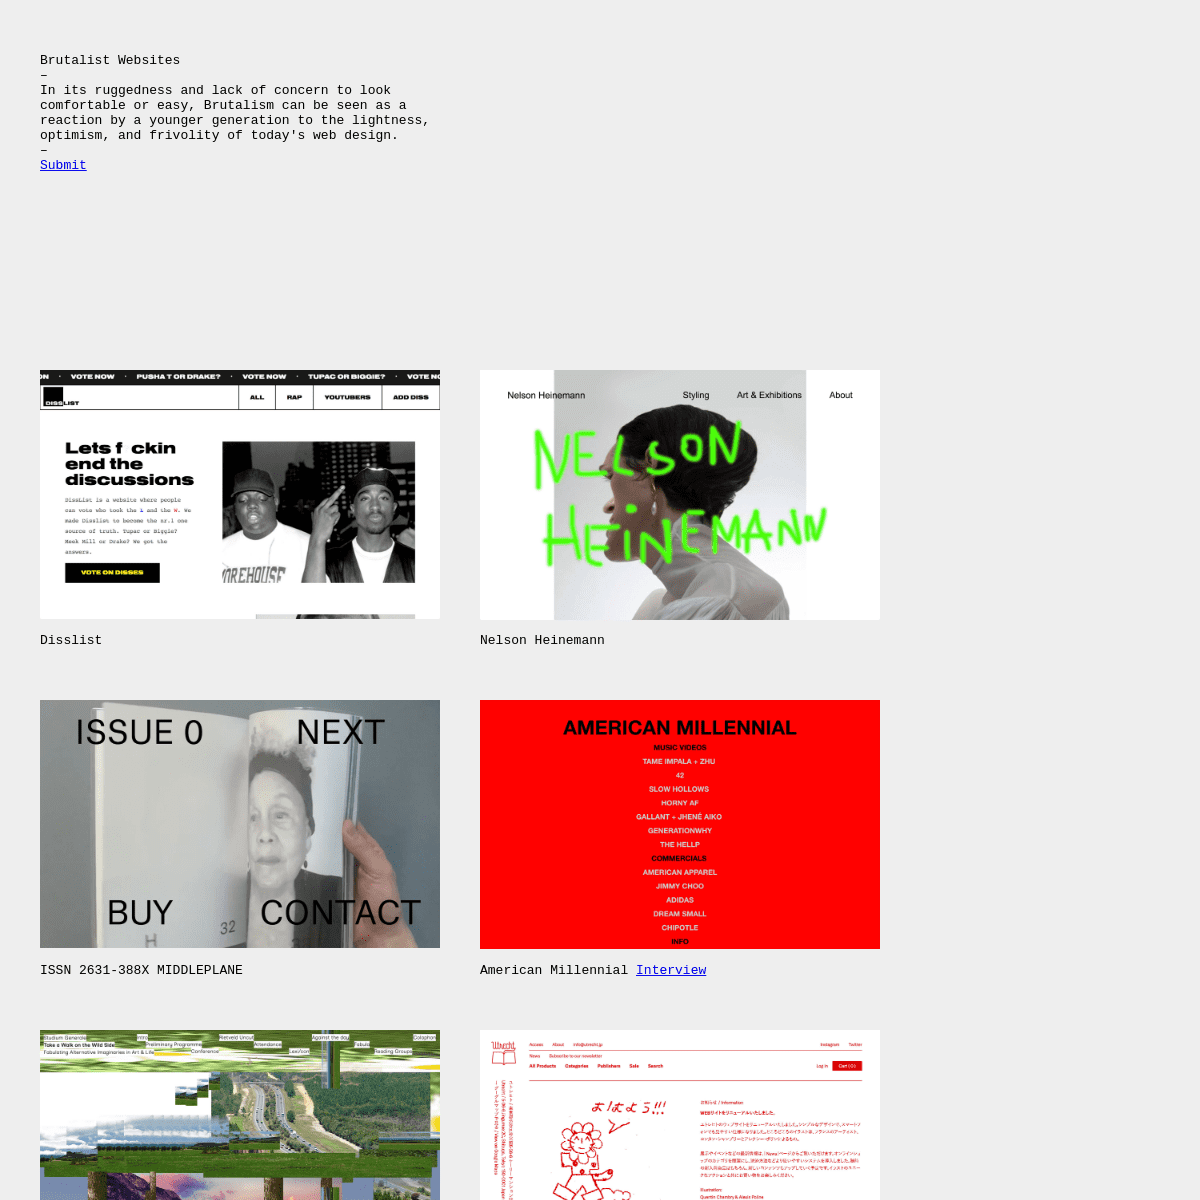 A complete backup of brutalistwebsites.com